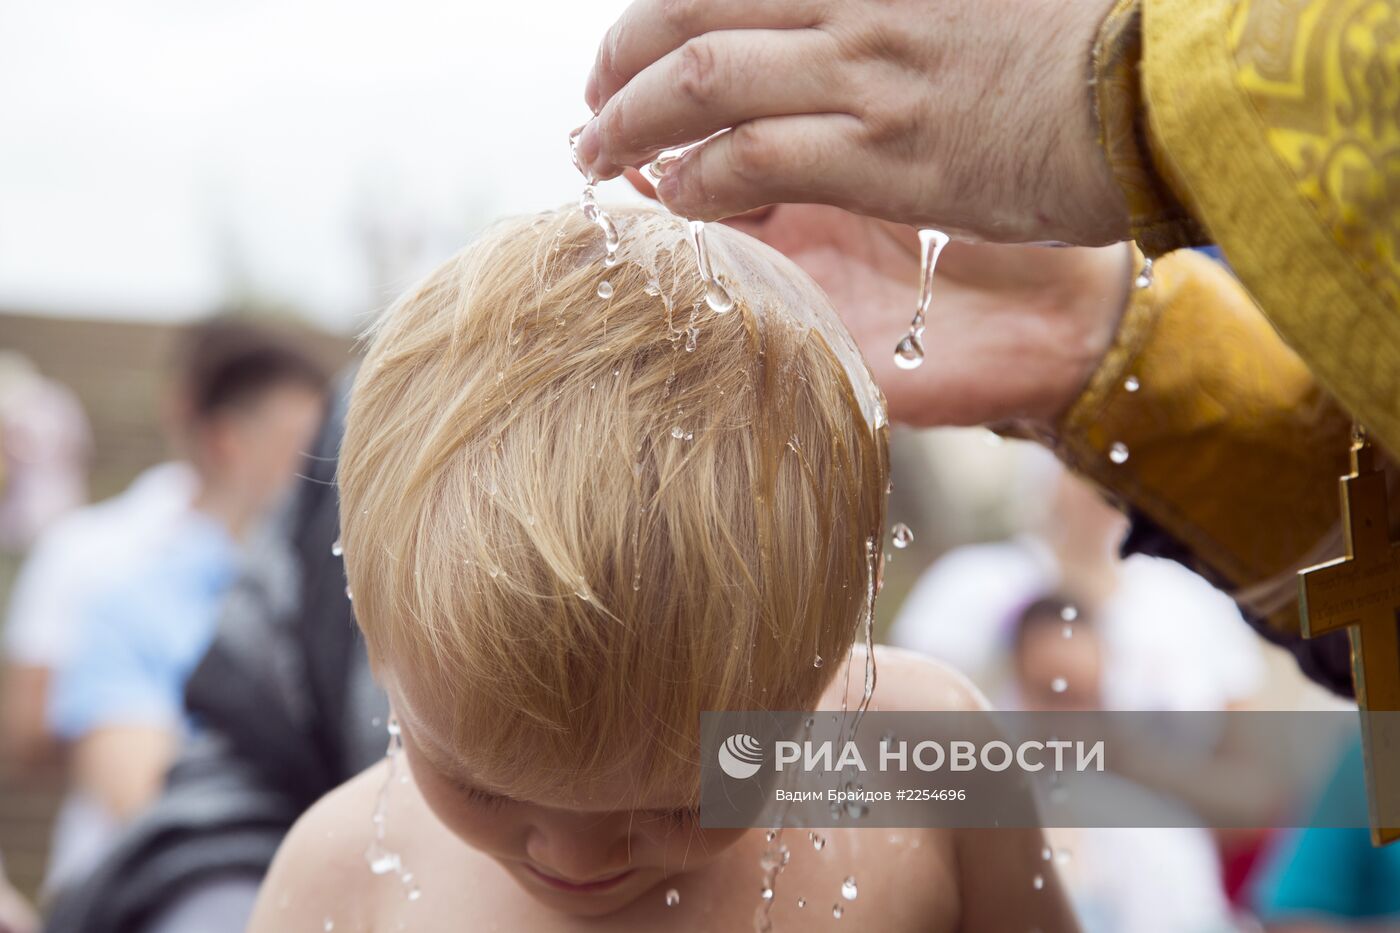 Празднование 1025-летия крещения Руси в Уфе